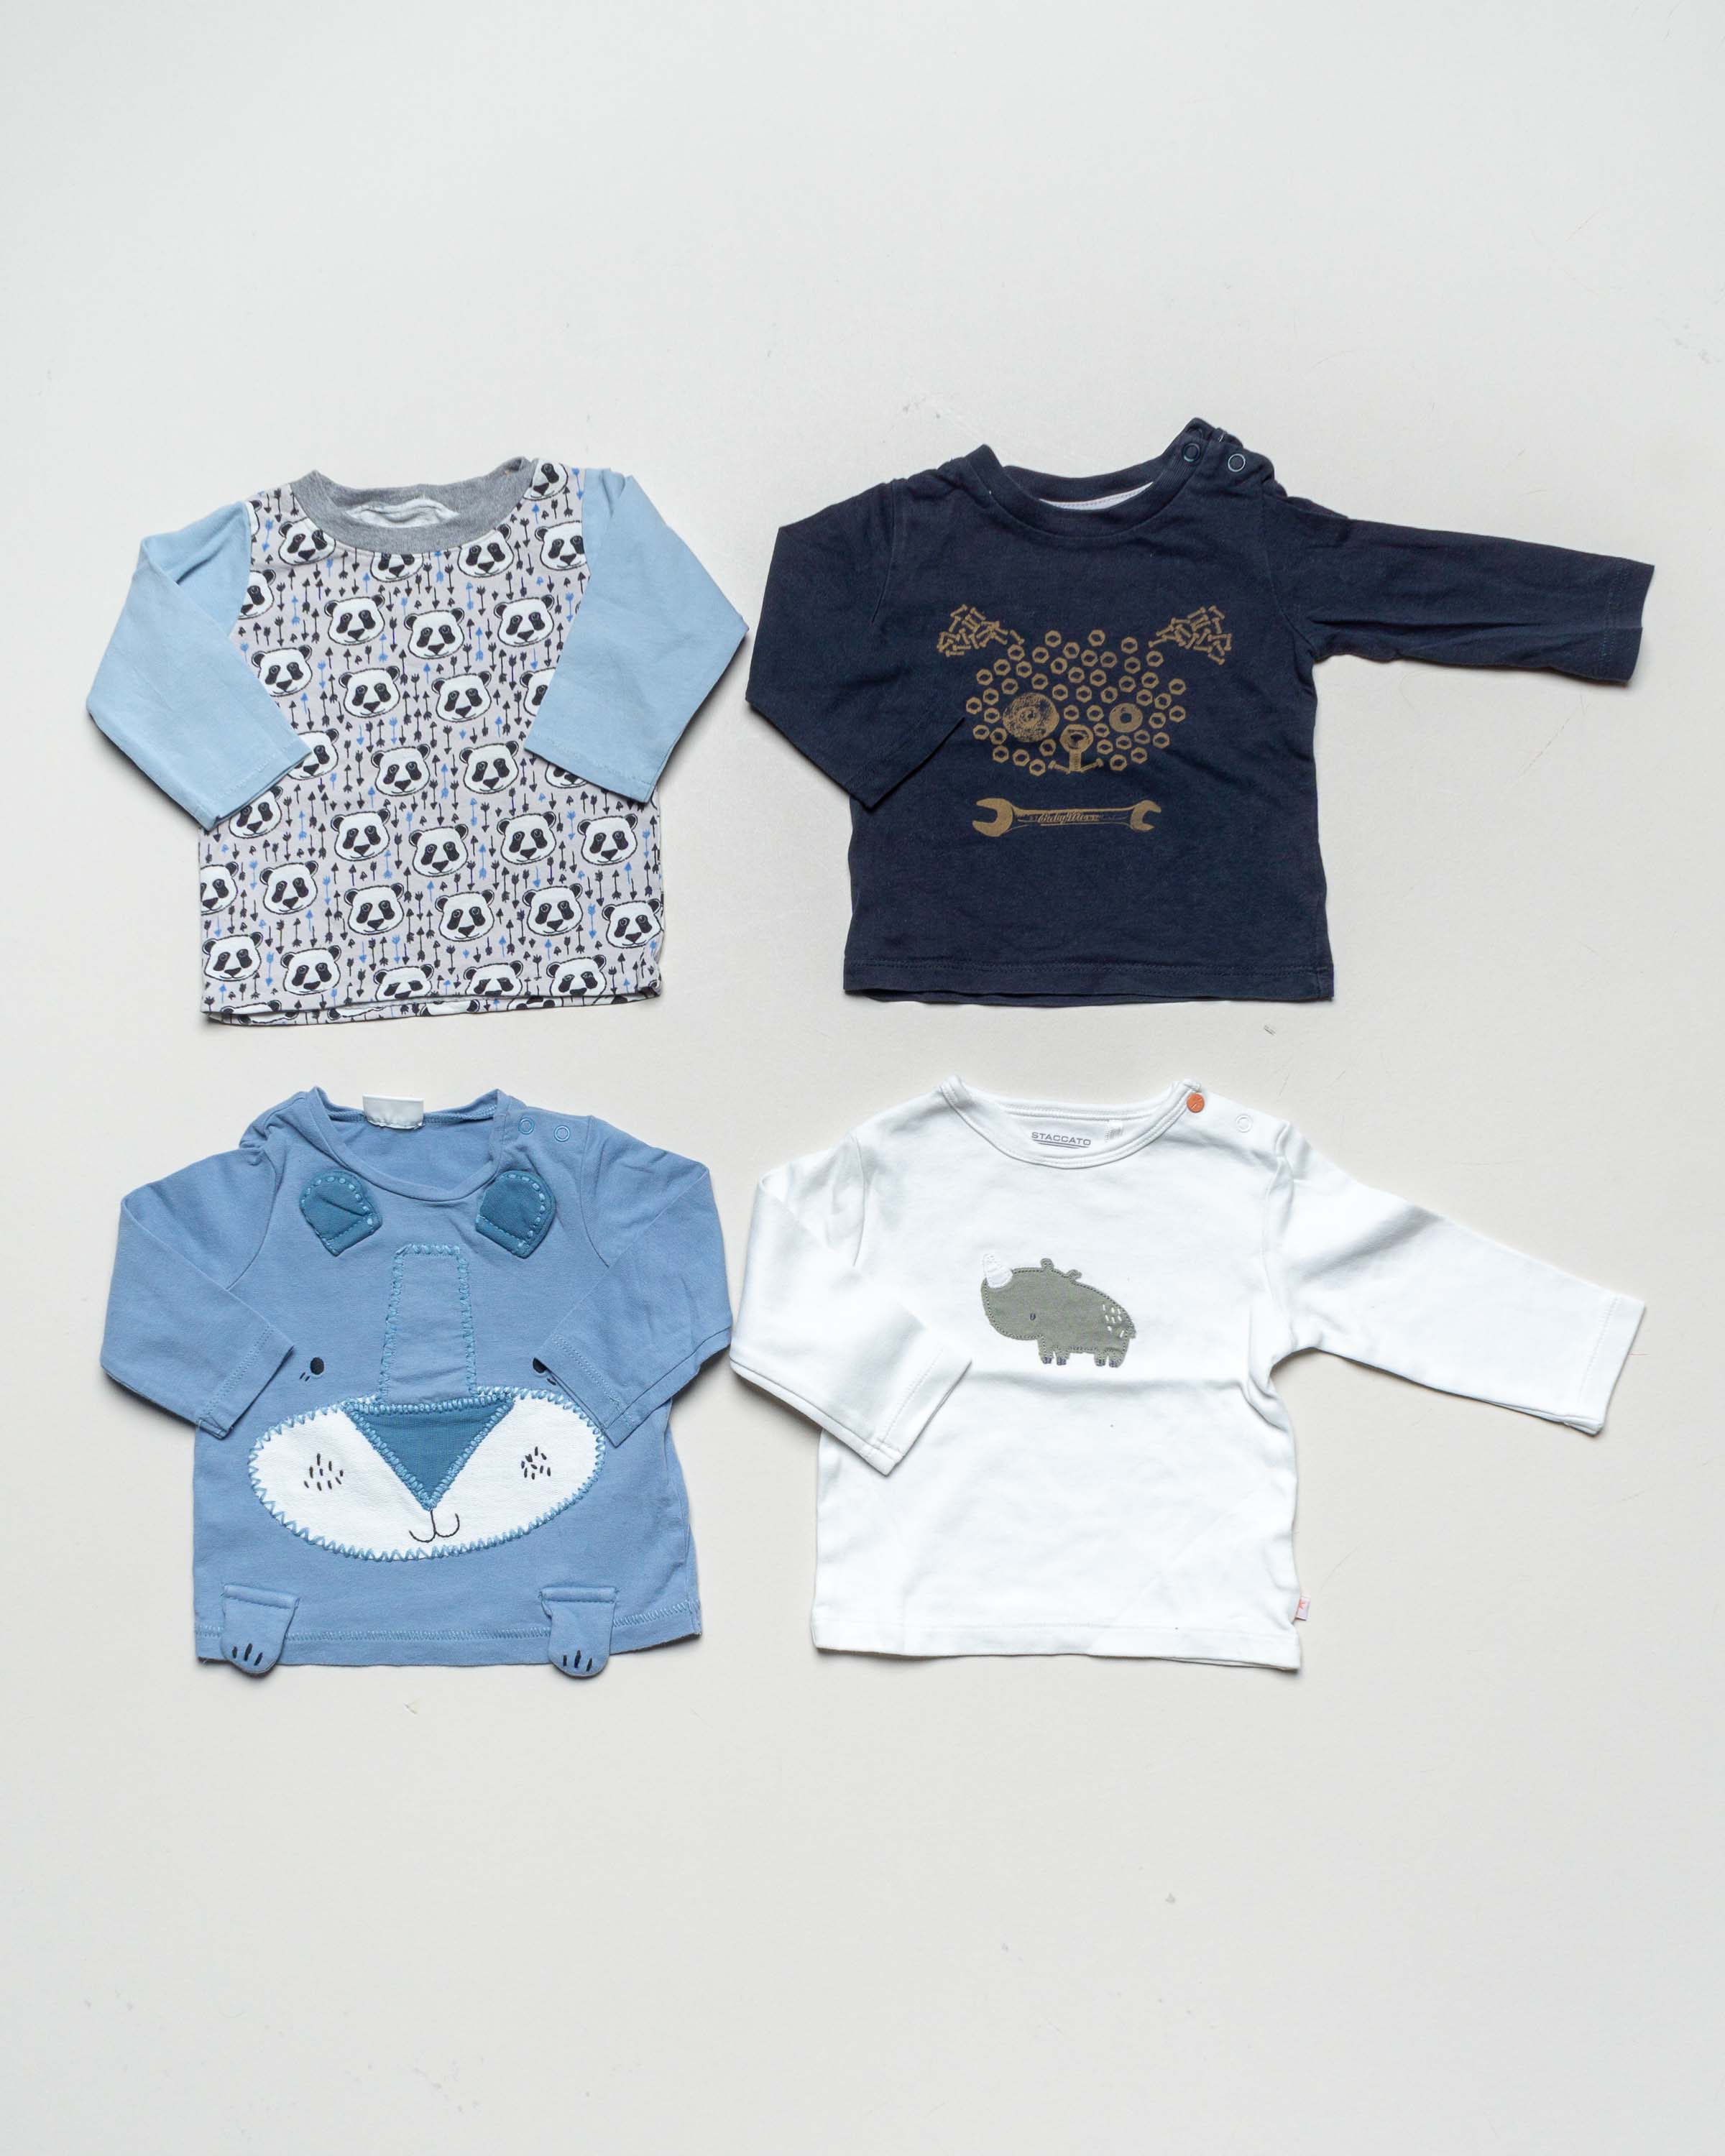 4 Langarmshirts Gr. 62/68 – handmade, Mexx, Staccato, Next baby blau Jungen Mädchen Pack Set